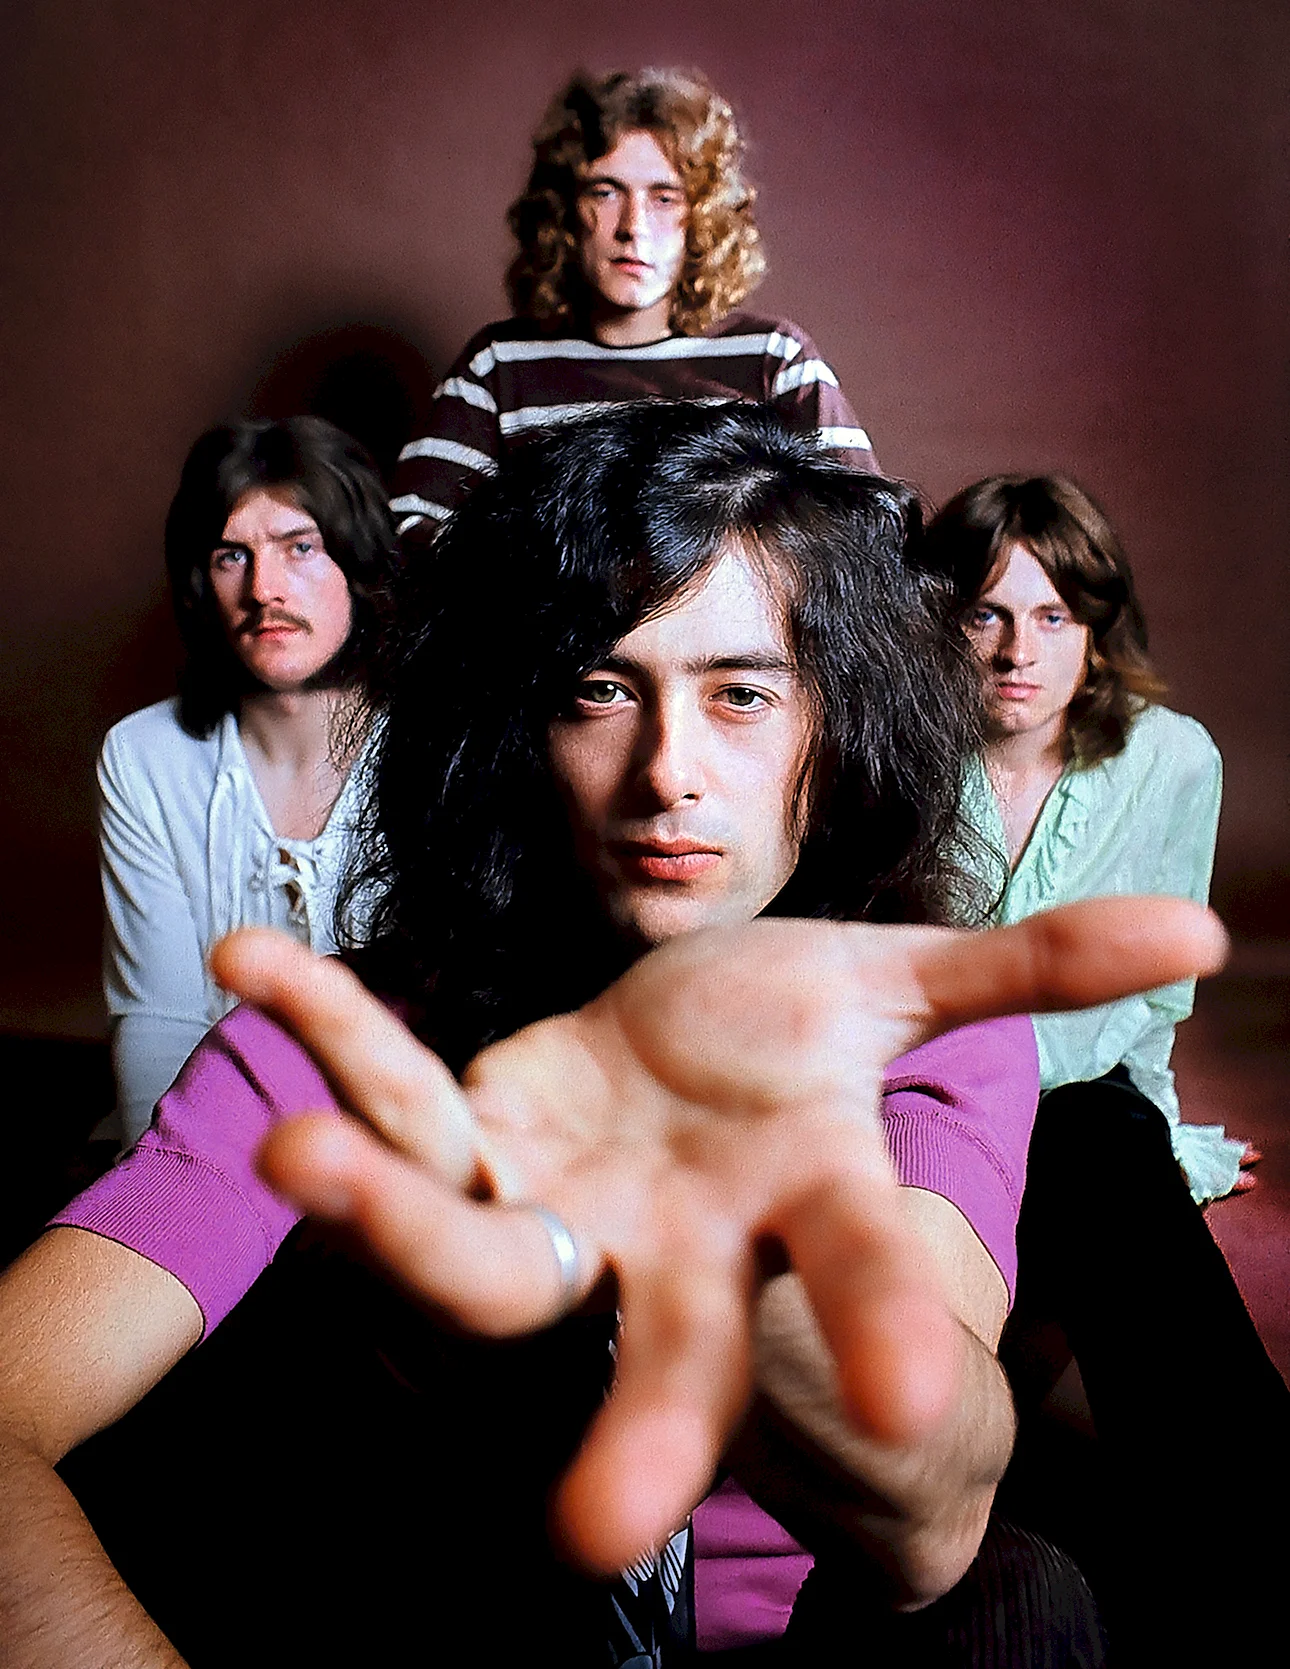 Led Zeppelin 1969 Wallpaper For iPhone